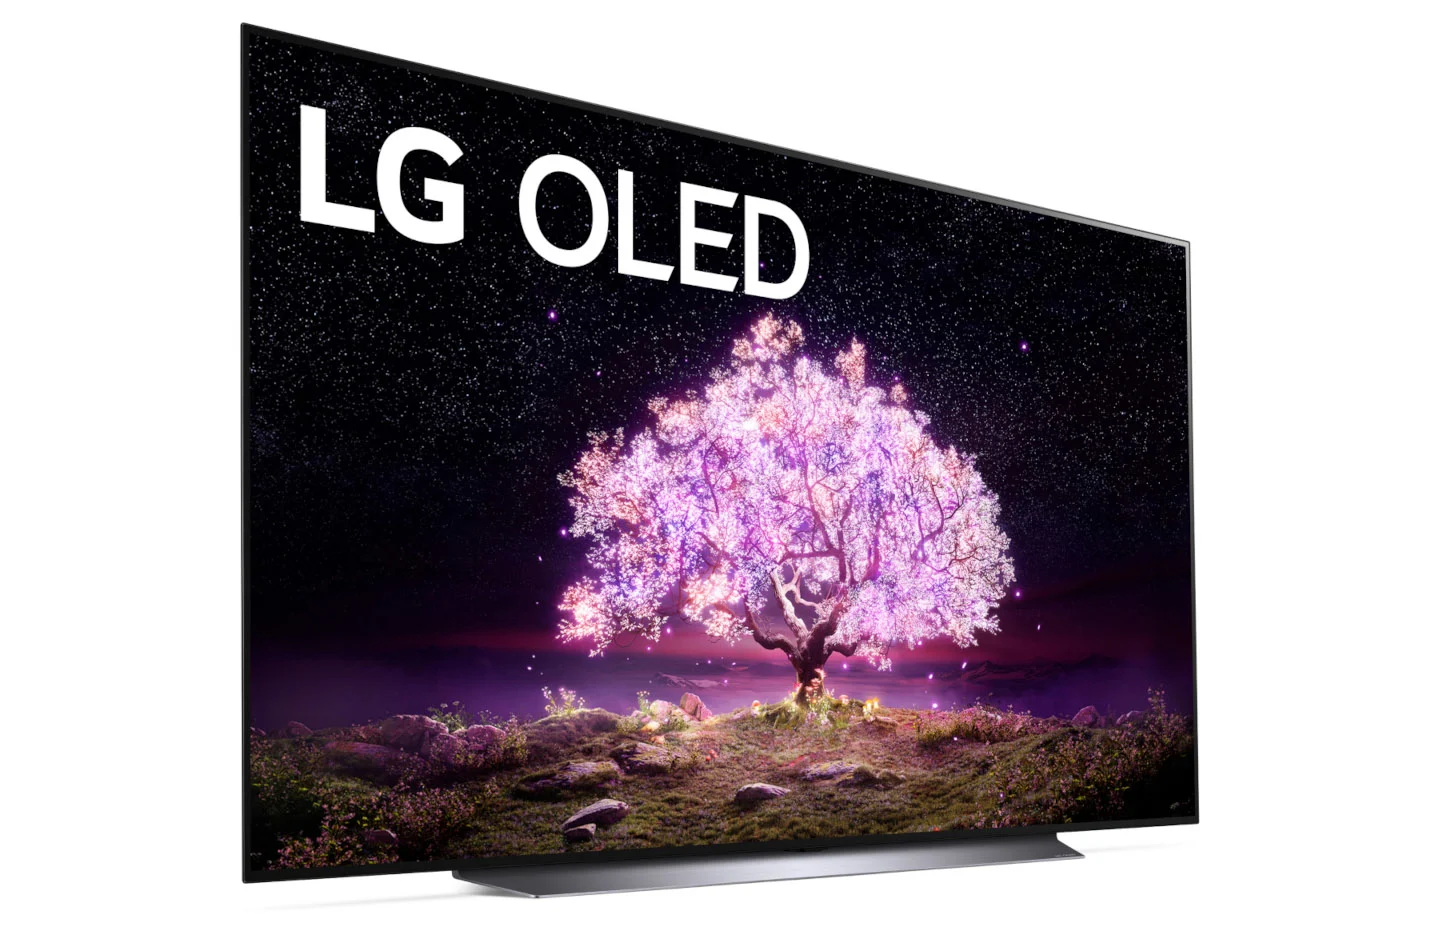 LG C-Series OLED TVs